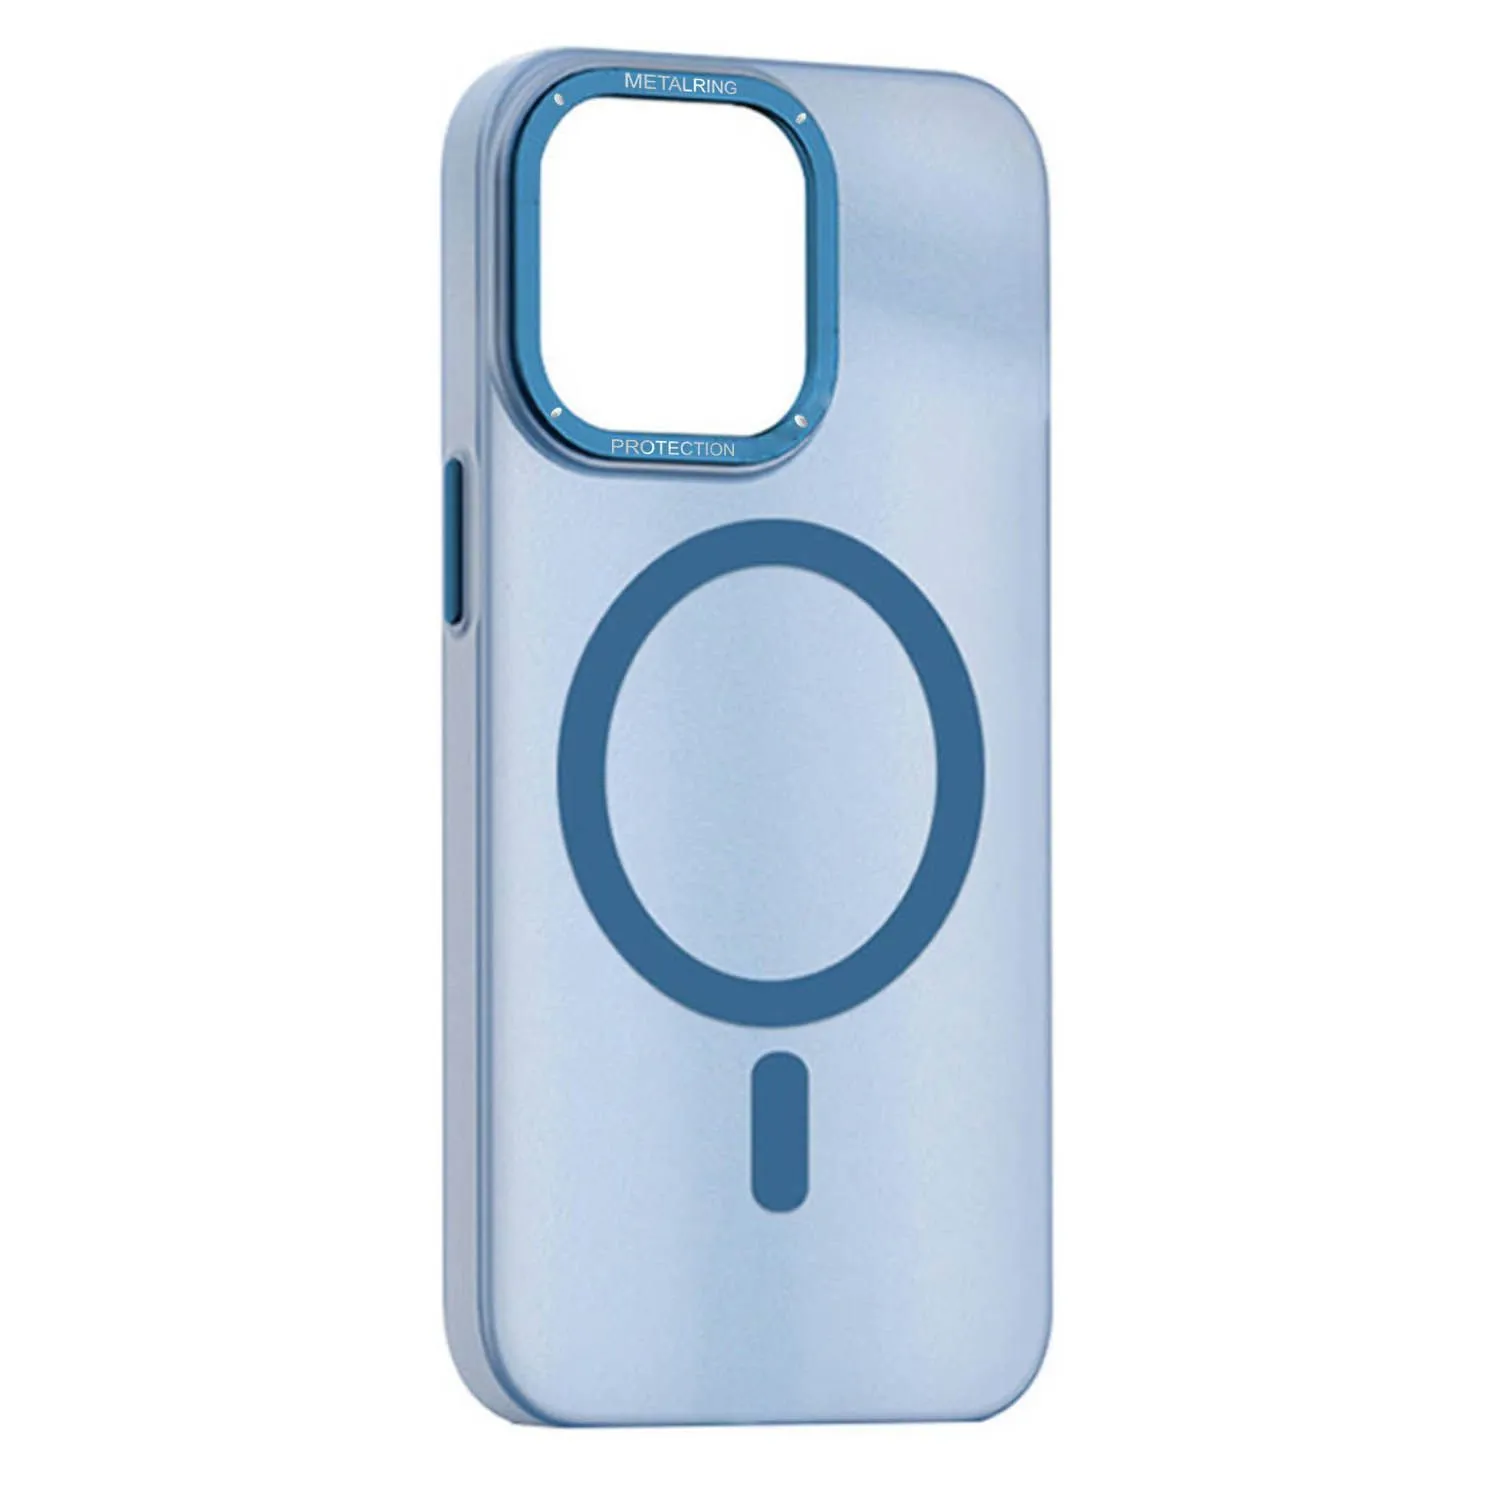 Матовый чехол Apple iPhone 11 с металлической окантовкой с MagSafe (голубой)